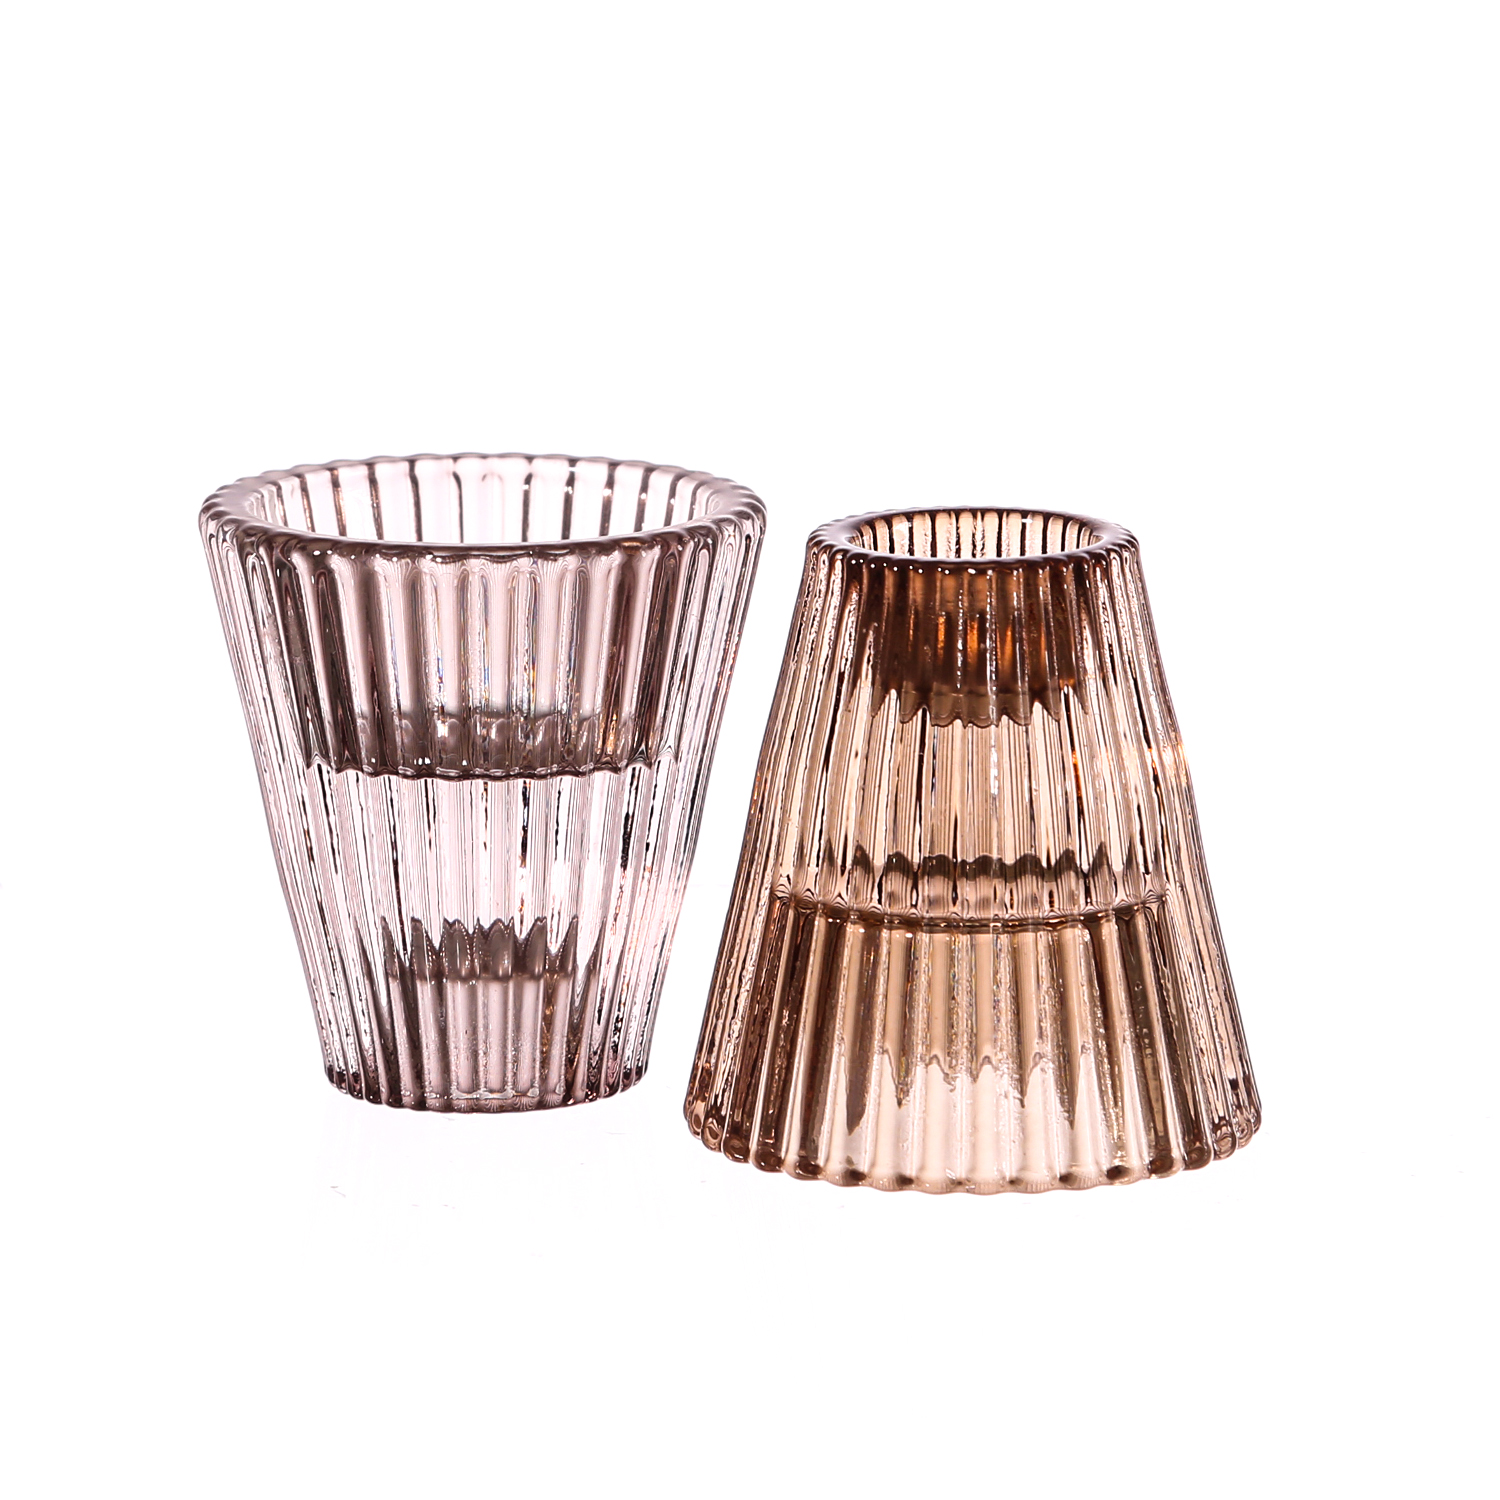 Kerzenhalter 2in1 - Teelichthalter/Stabkerzenhalter - Glas - H: 6,5cm -  braun, grau - 2er Set